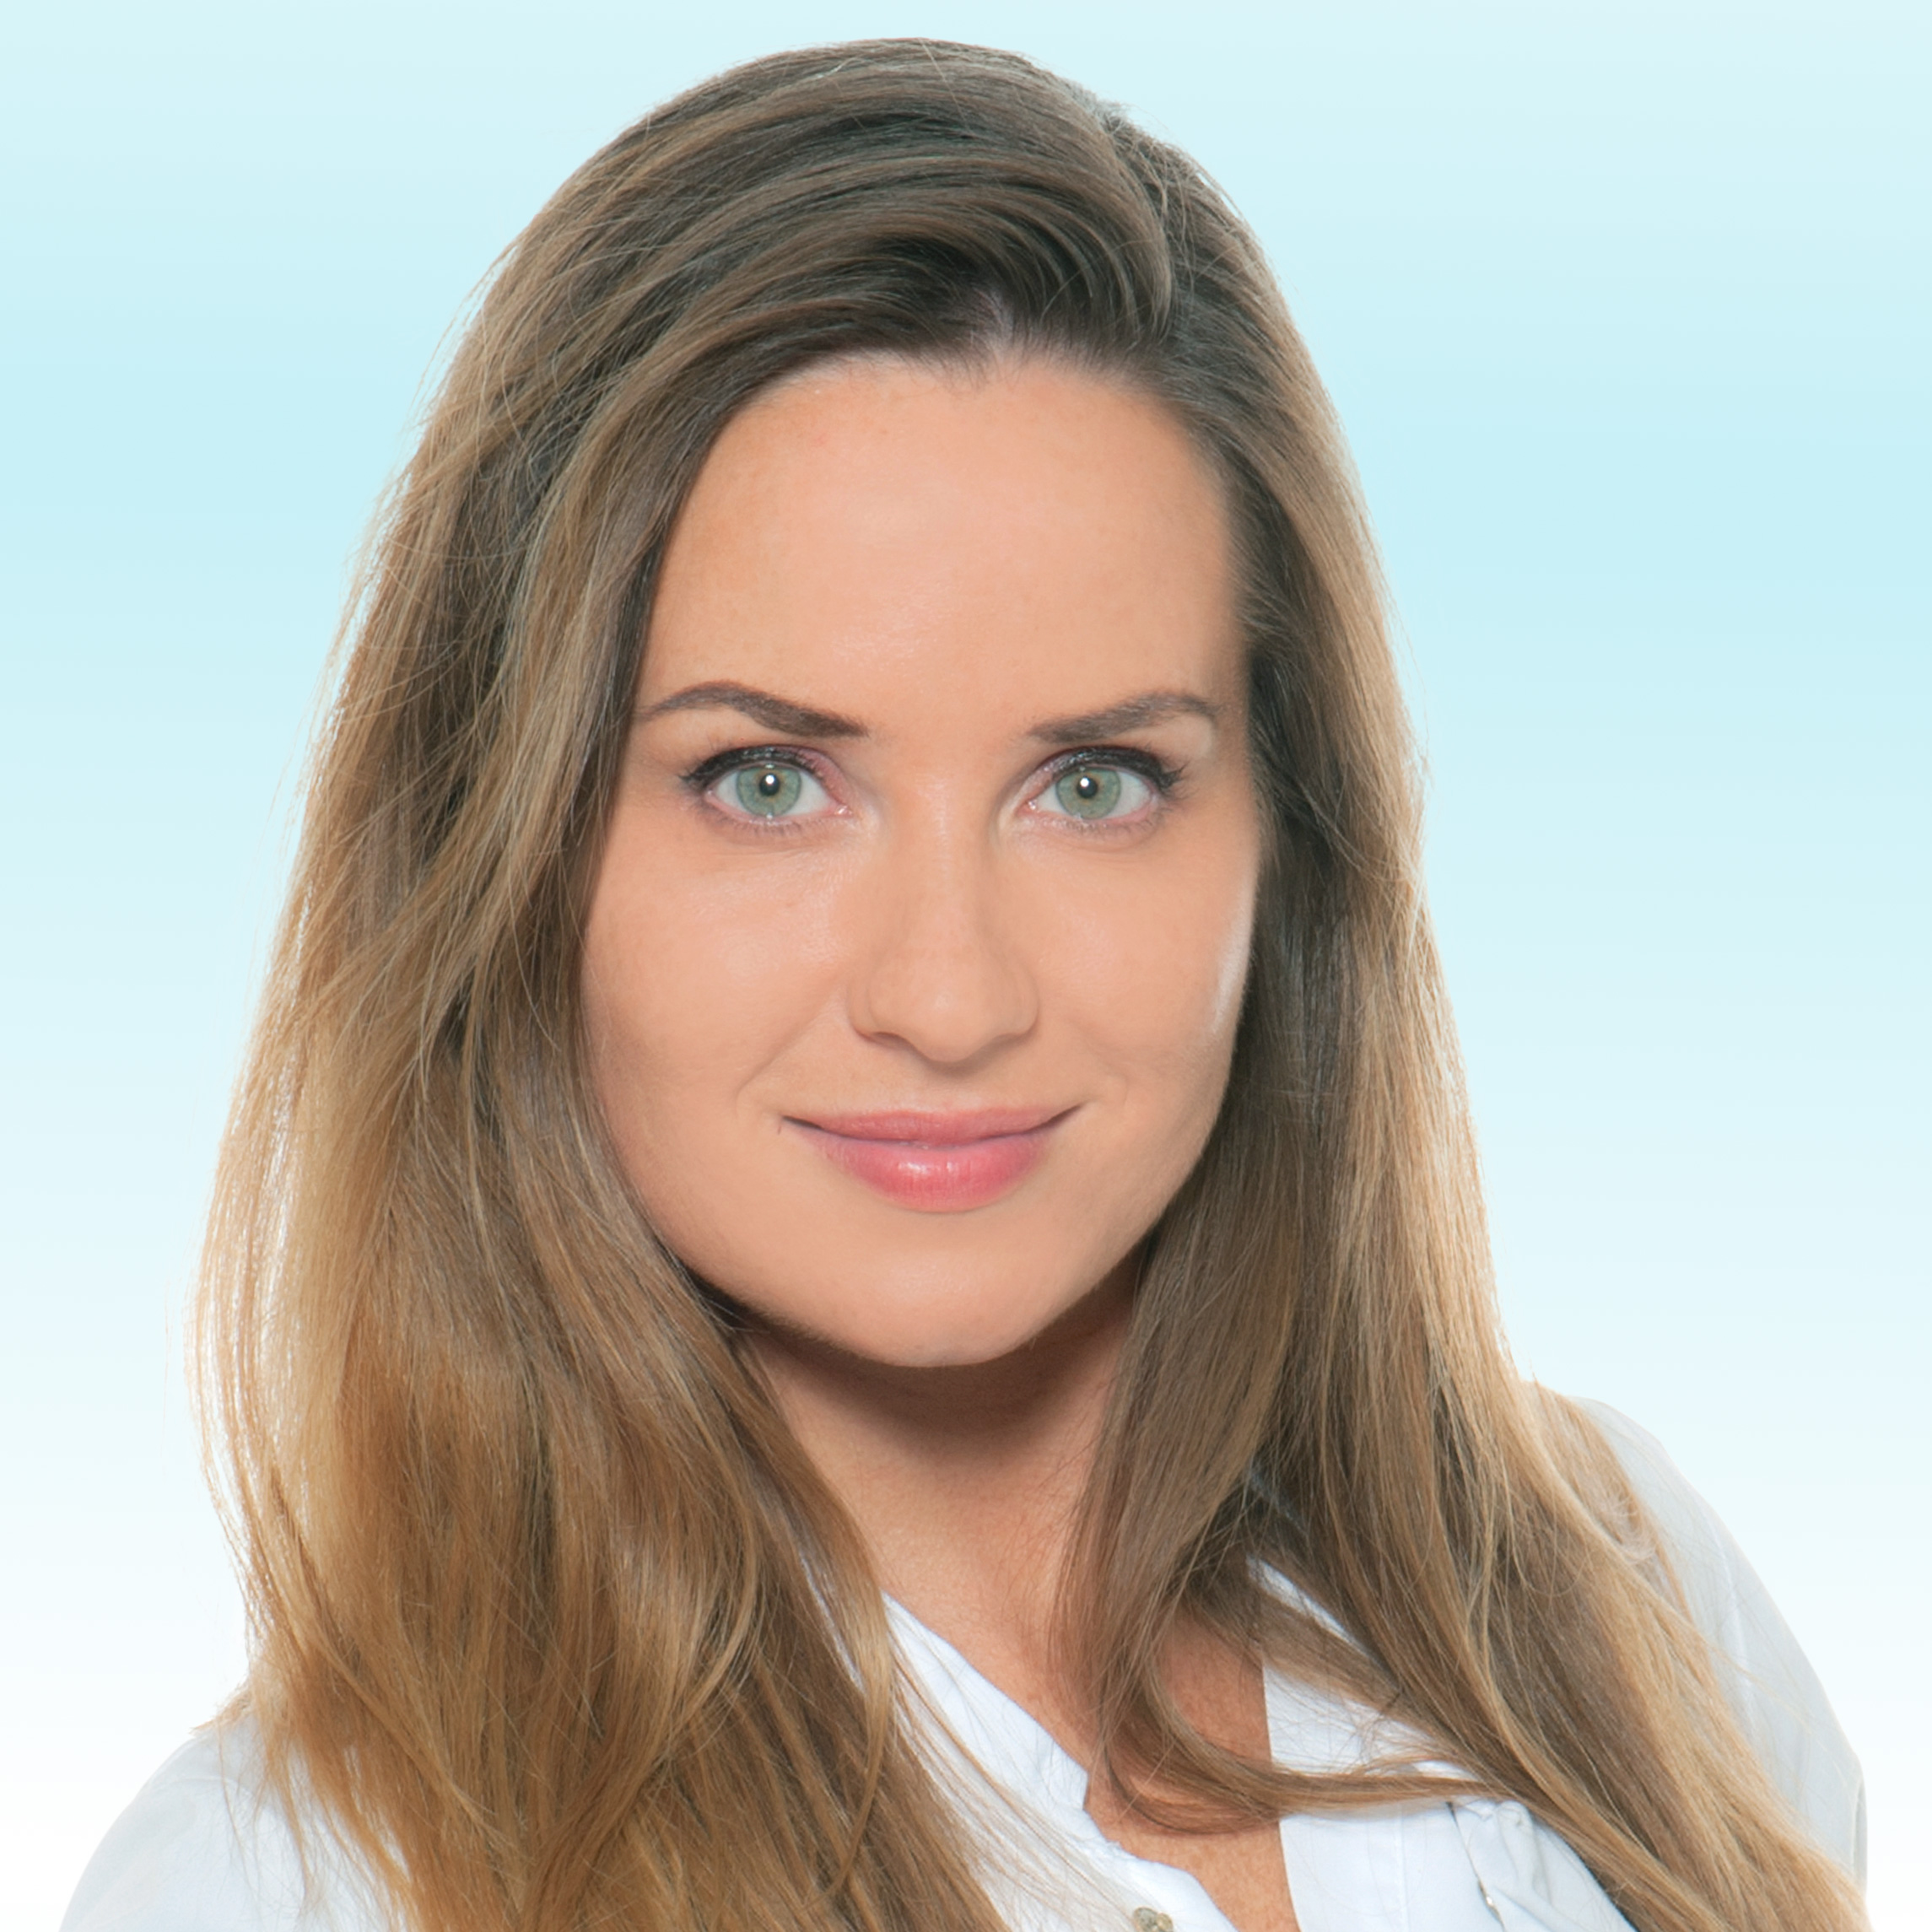 Hautarzt, Dr. Franziska Wenz